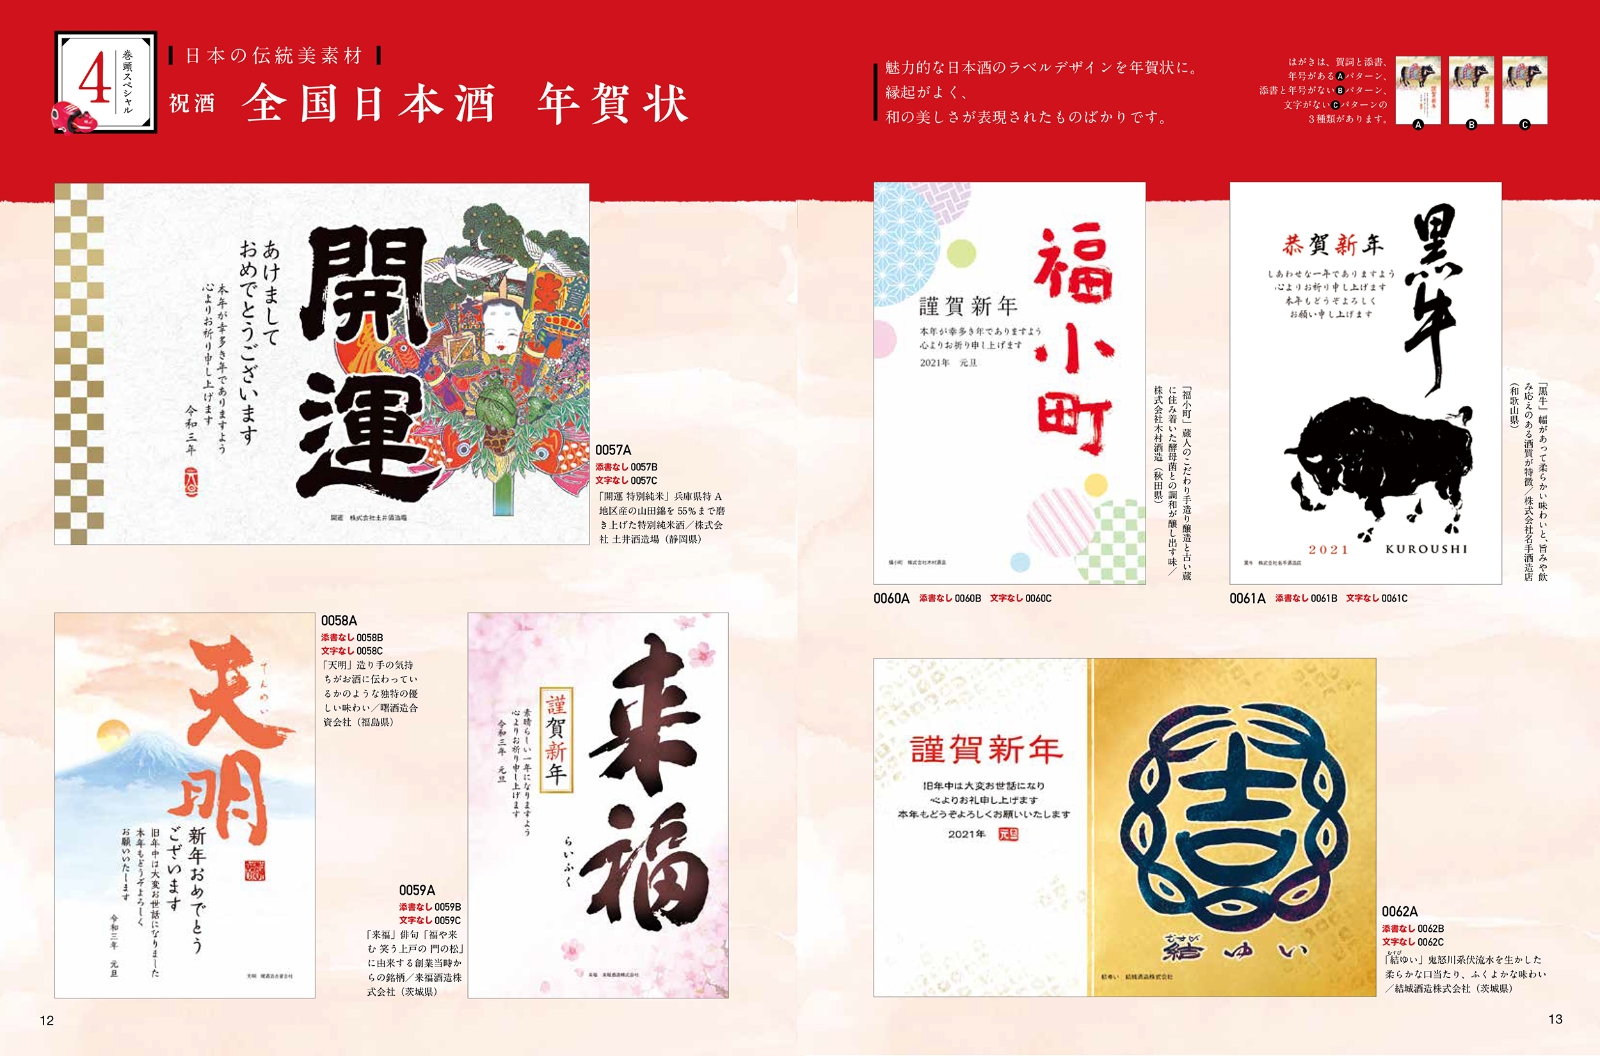 楽天ブックス 日本の伝統美 令和の年賀状 21 1 年賀状素材集編集部 本